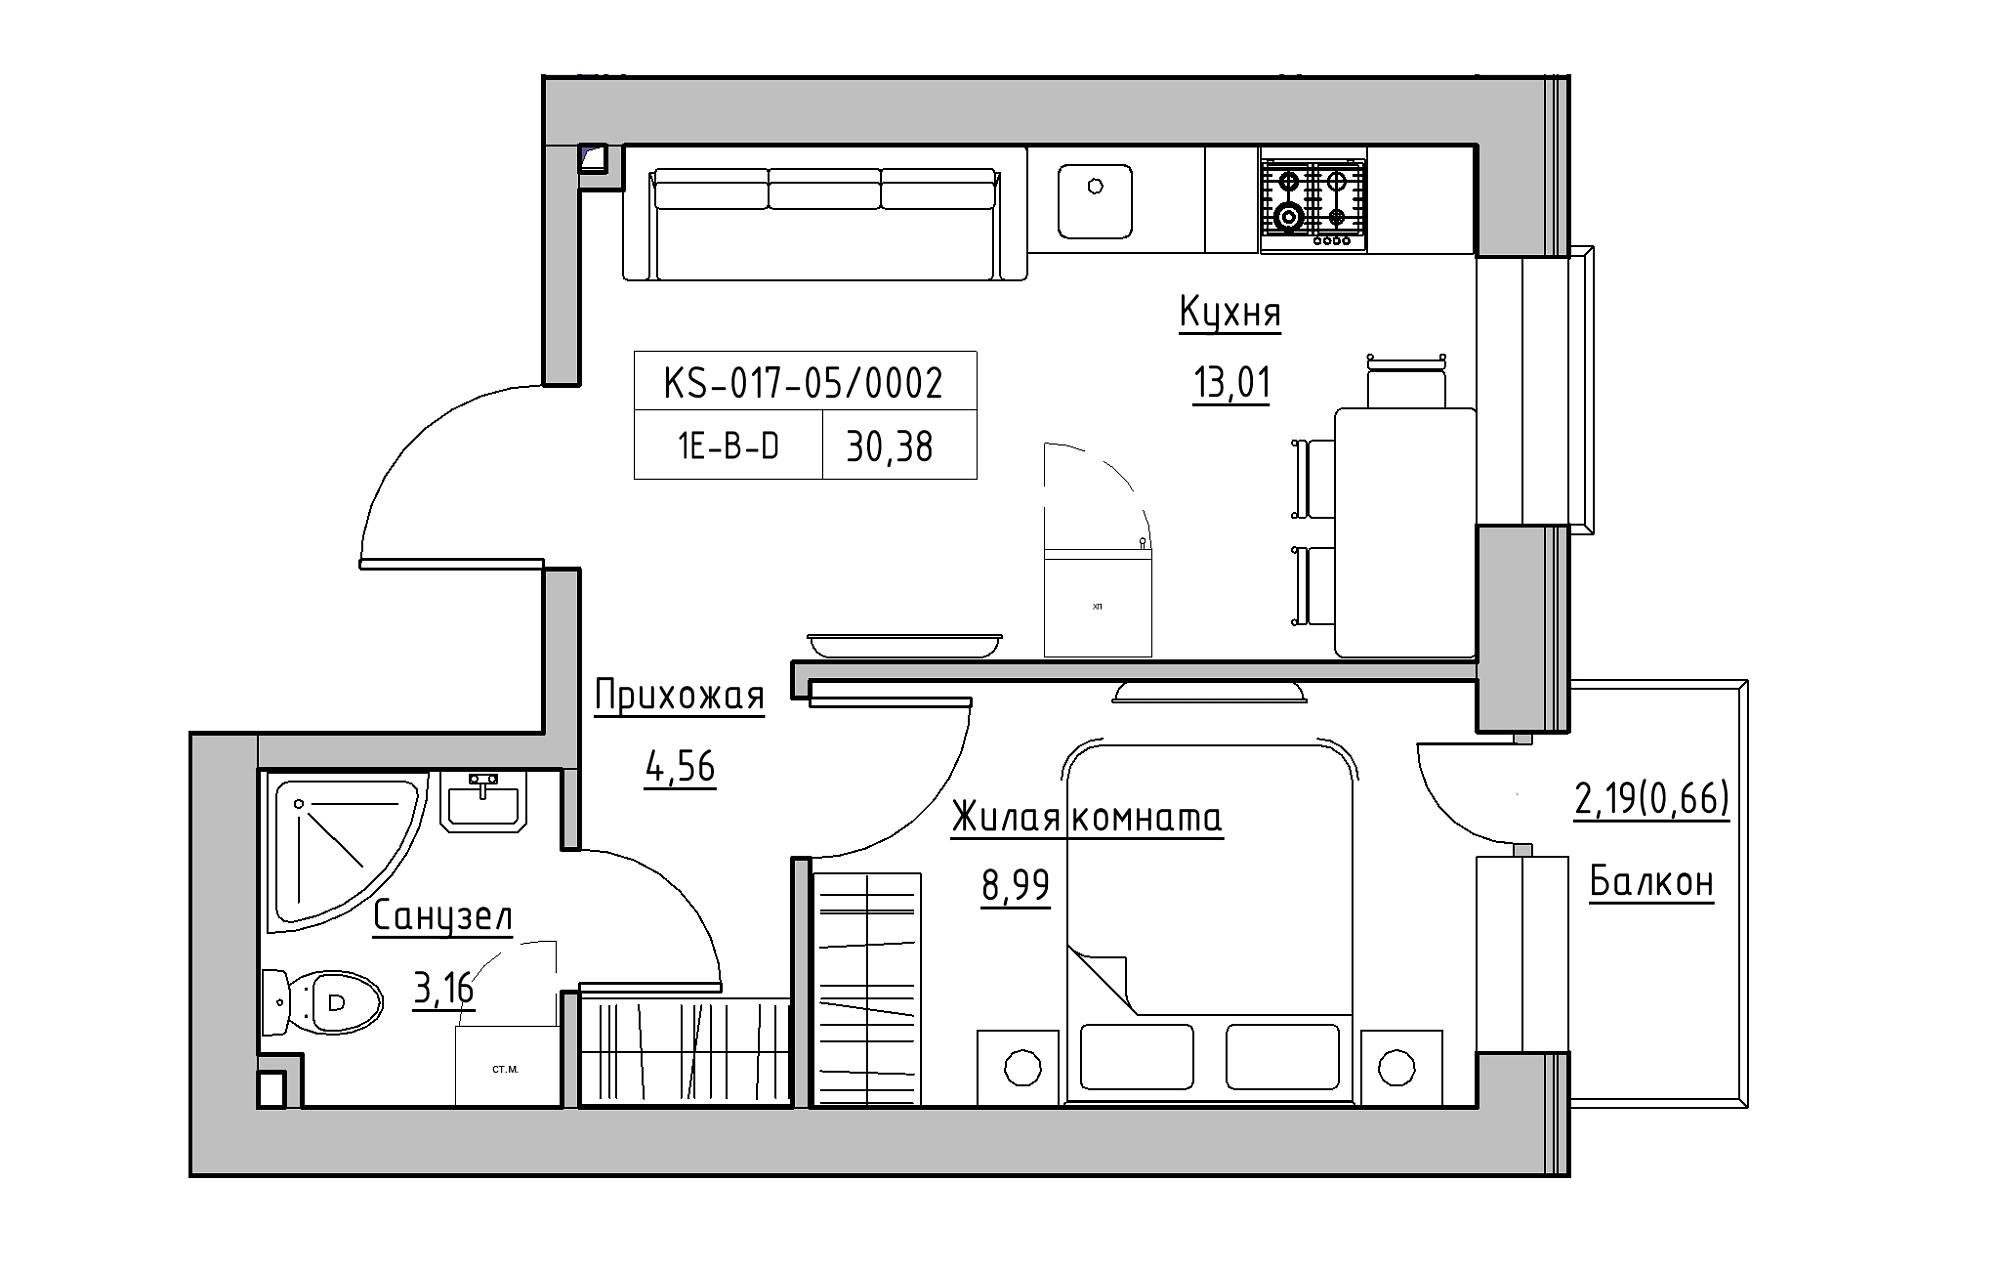 Планування 1-к квартира площею 30.38м2, KS-017-05/0002.